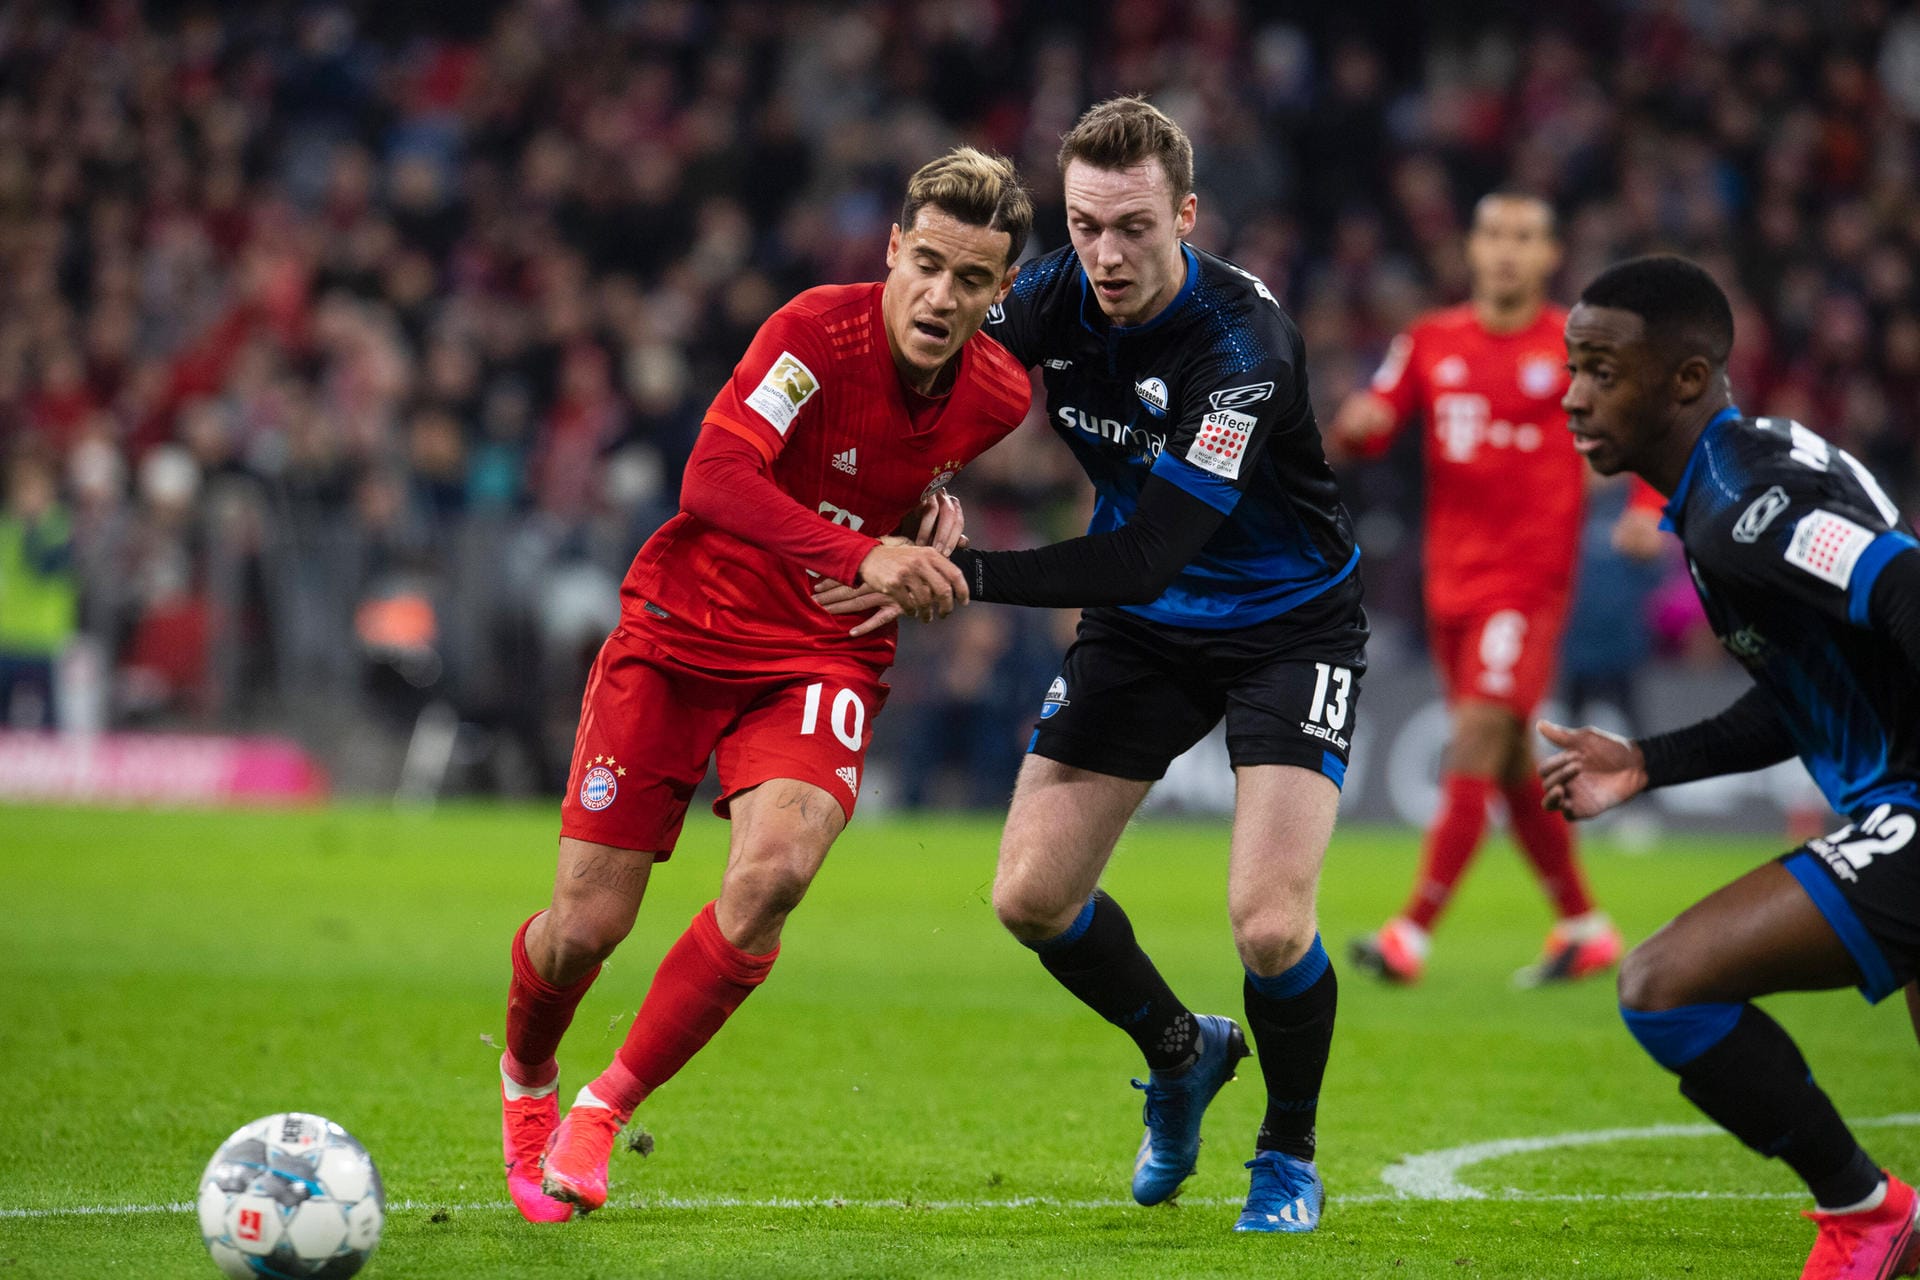 Der SC Paderborn presste im Spiel gegen den FC Bayern hoch, verteidigte mutig in einem 4-4-1-1. Der Aufsteiger versuchte, das Zentrum dicht zu machen und nahm Bayrens Spielgestalter Thiago oft in Manndeckung. Der Rekordmeister hatte dadurch Schwierigkeiten durchzukommen, auch wenn die individuelle Qualität klar höher war.